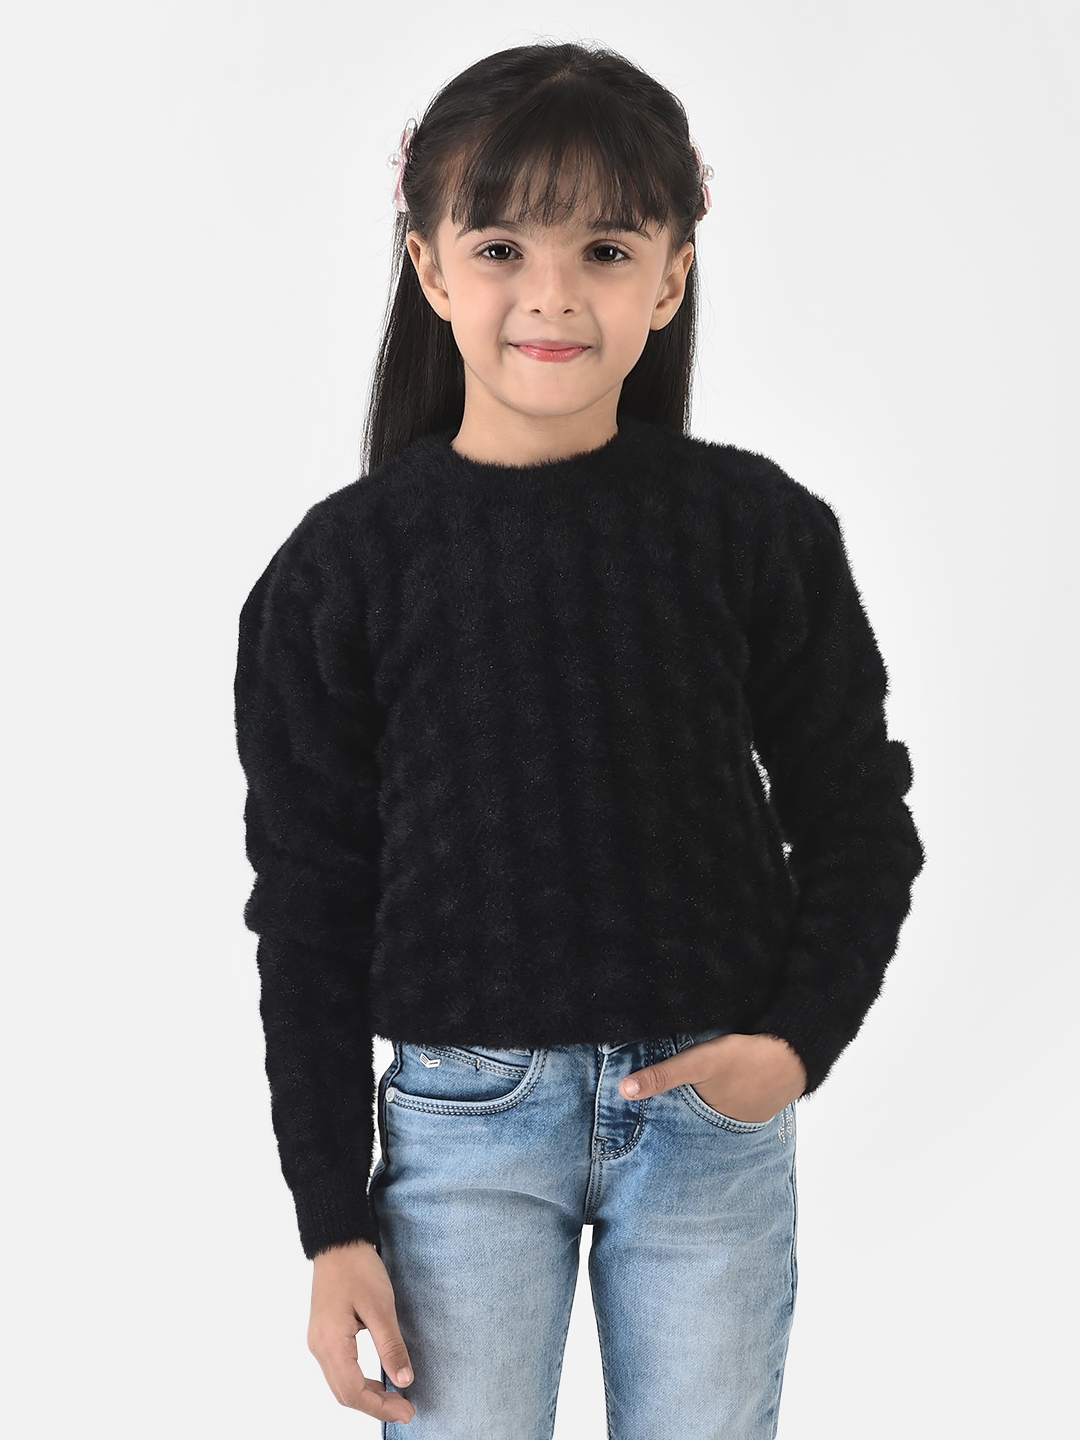 Crimsoune Club | Crimsoune Club Girls Black Sweater in Self-Designed Print 0